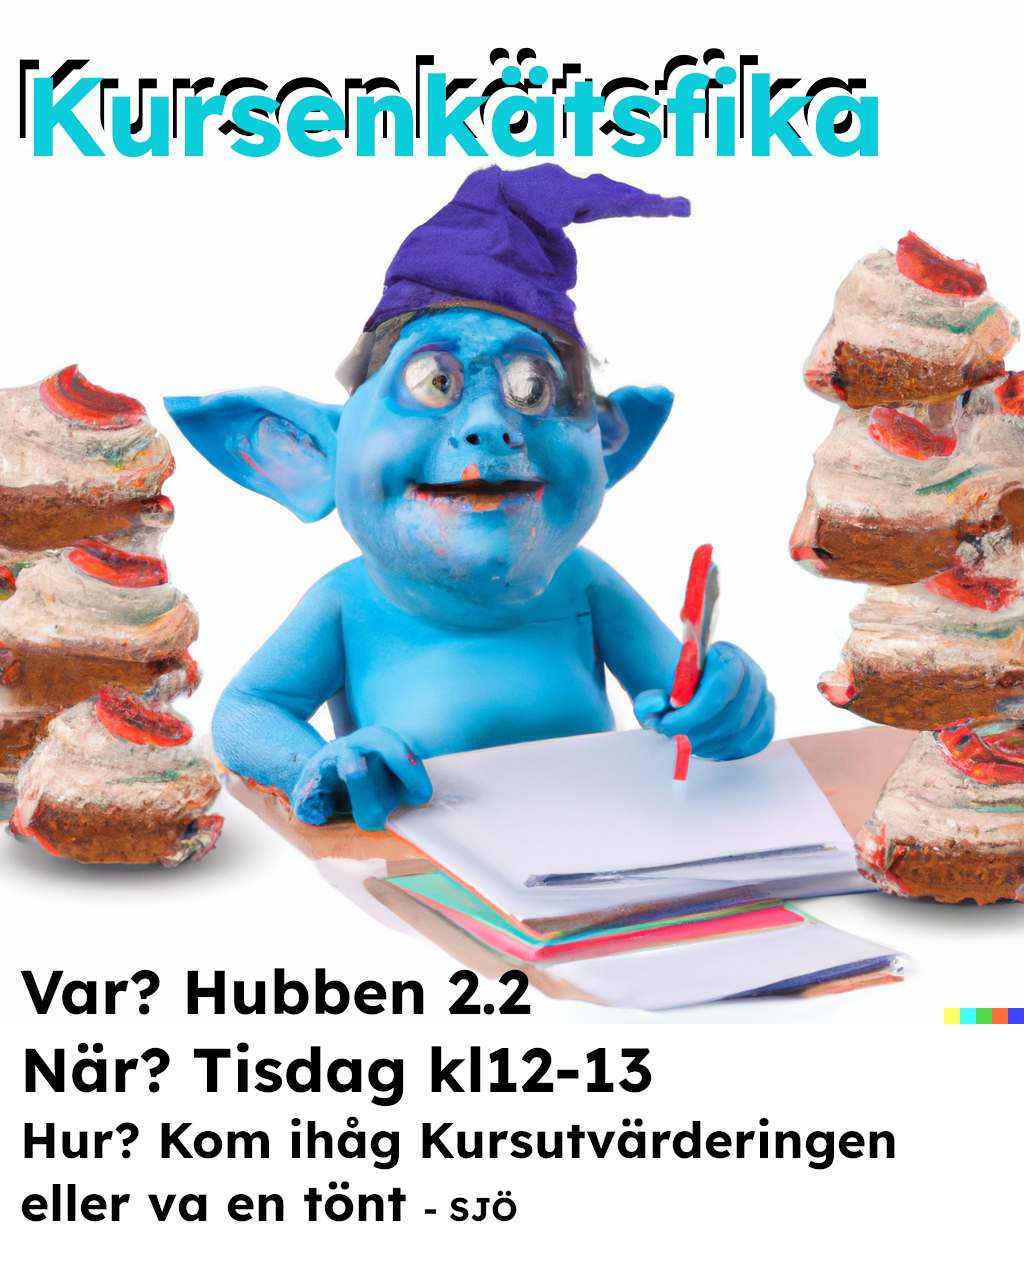 DALL·E 2023-11-03 09.27.06 - Studious Smurf doing syrveys eating humongours cakes